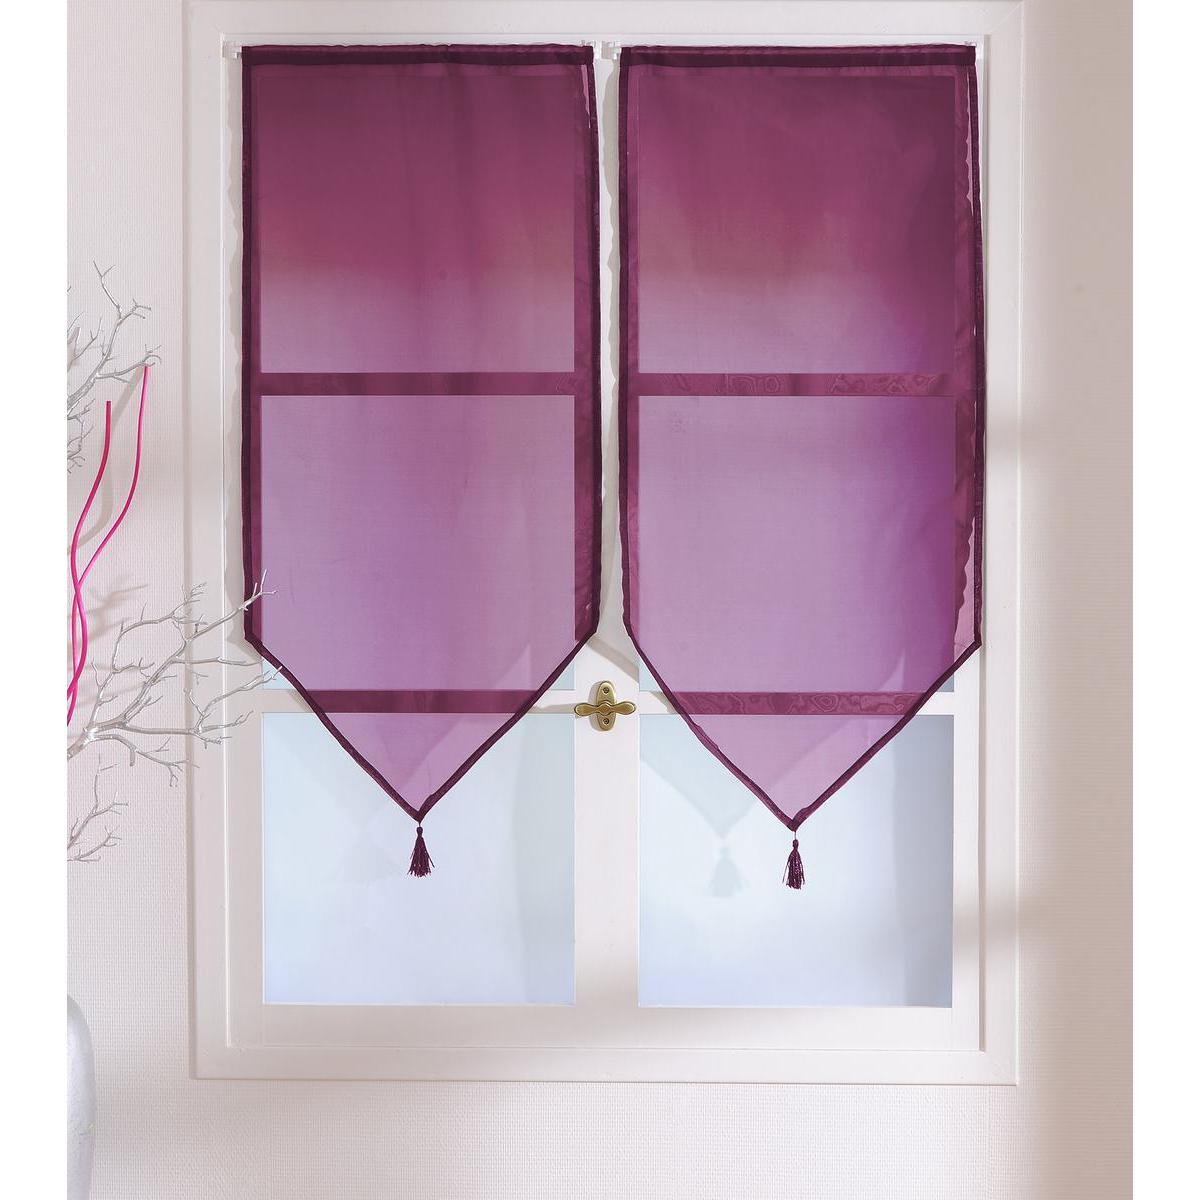 Paire de vitrages - 100% polyester - 60 x 120 cm - Violet